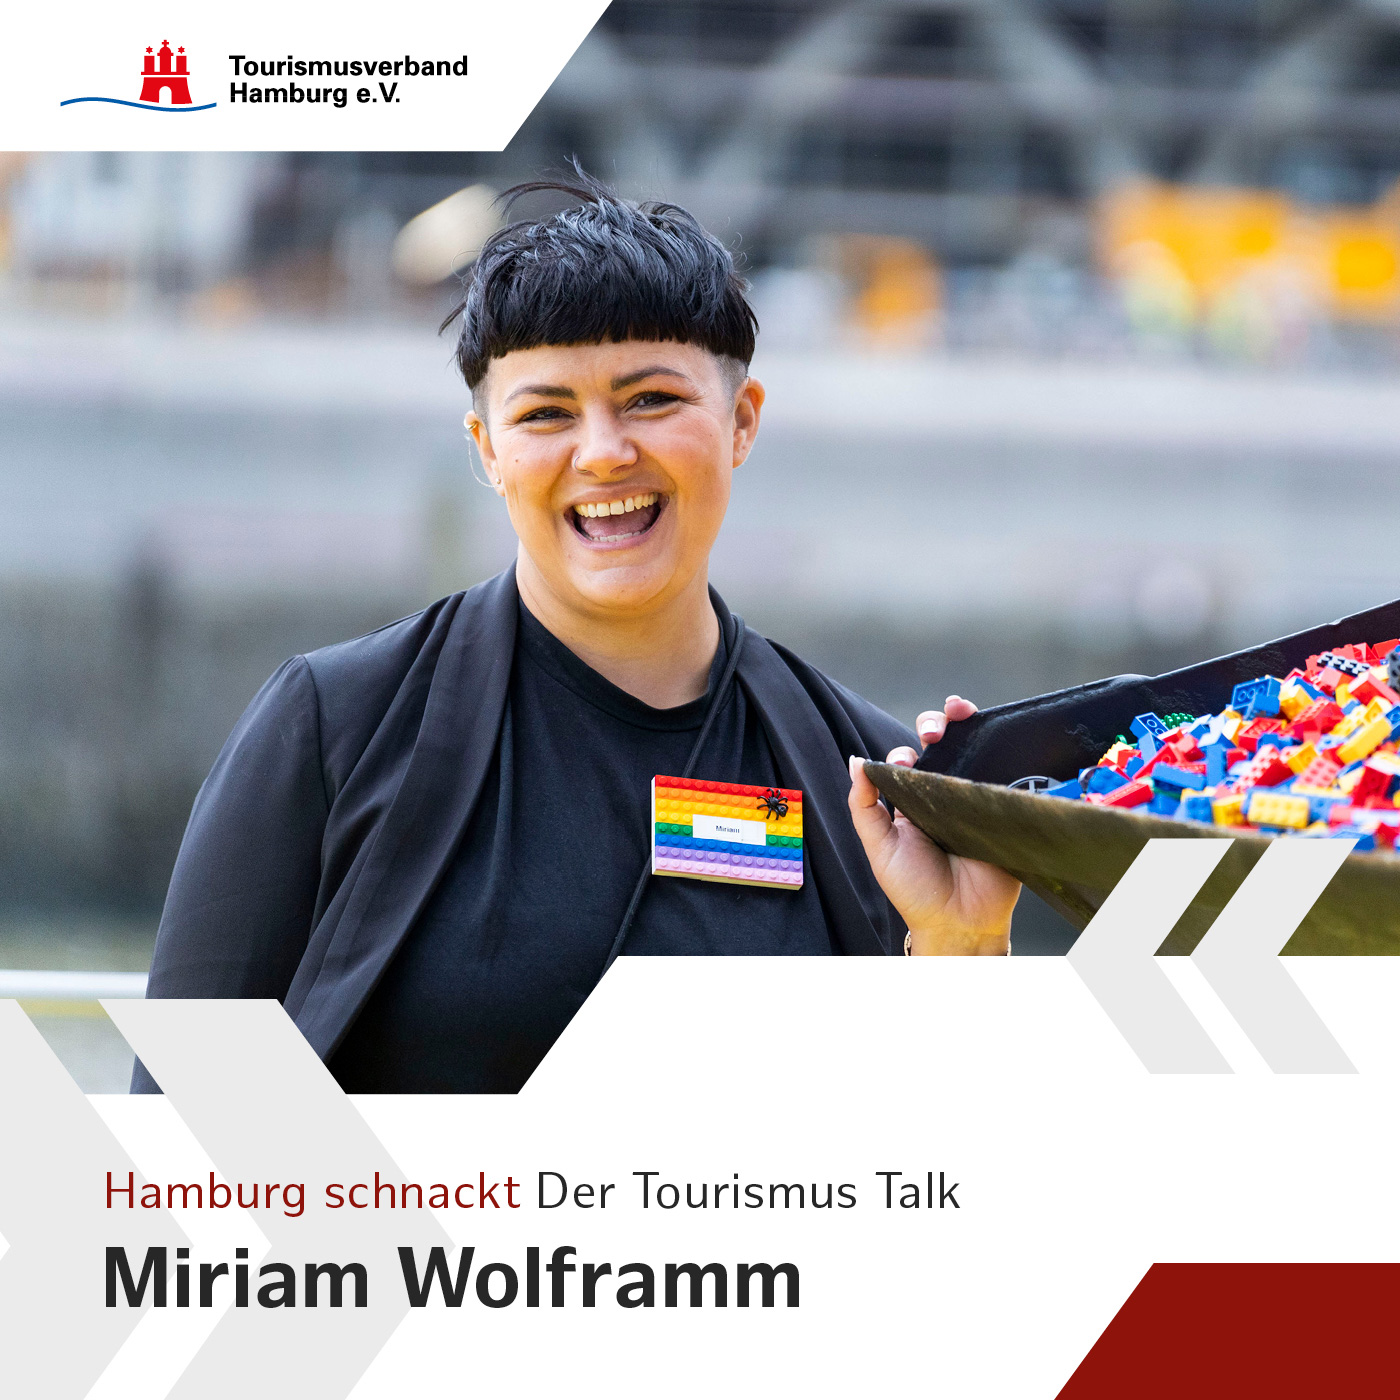 Hamburg schnackt mit Miriam Wolframm